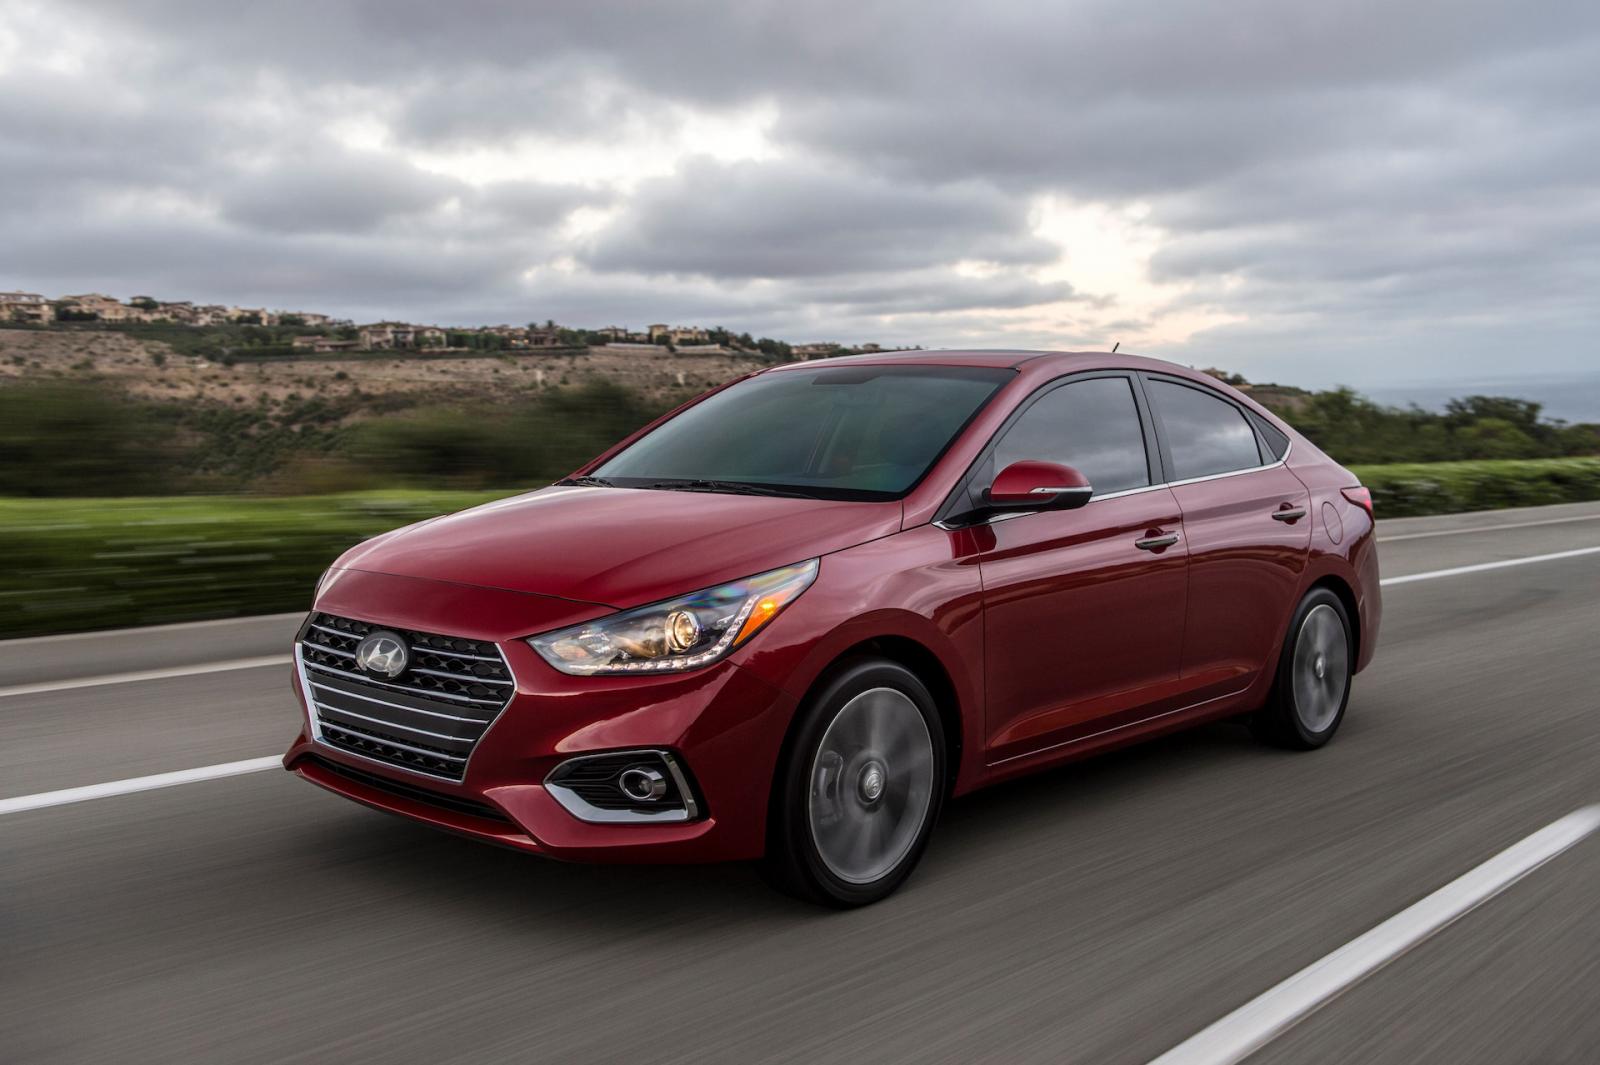 Latest Updates 2022: Hyundai Accent Fuel Consumption